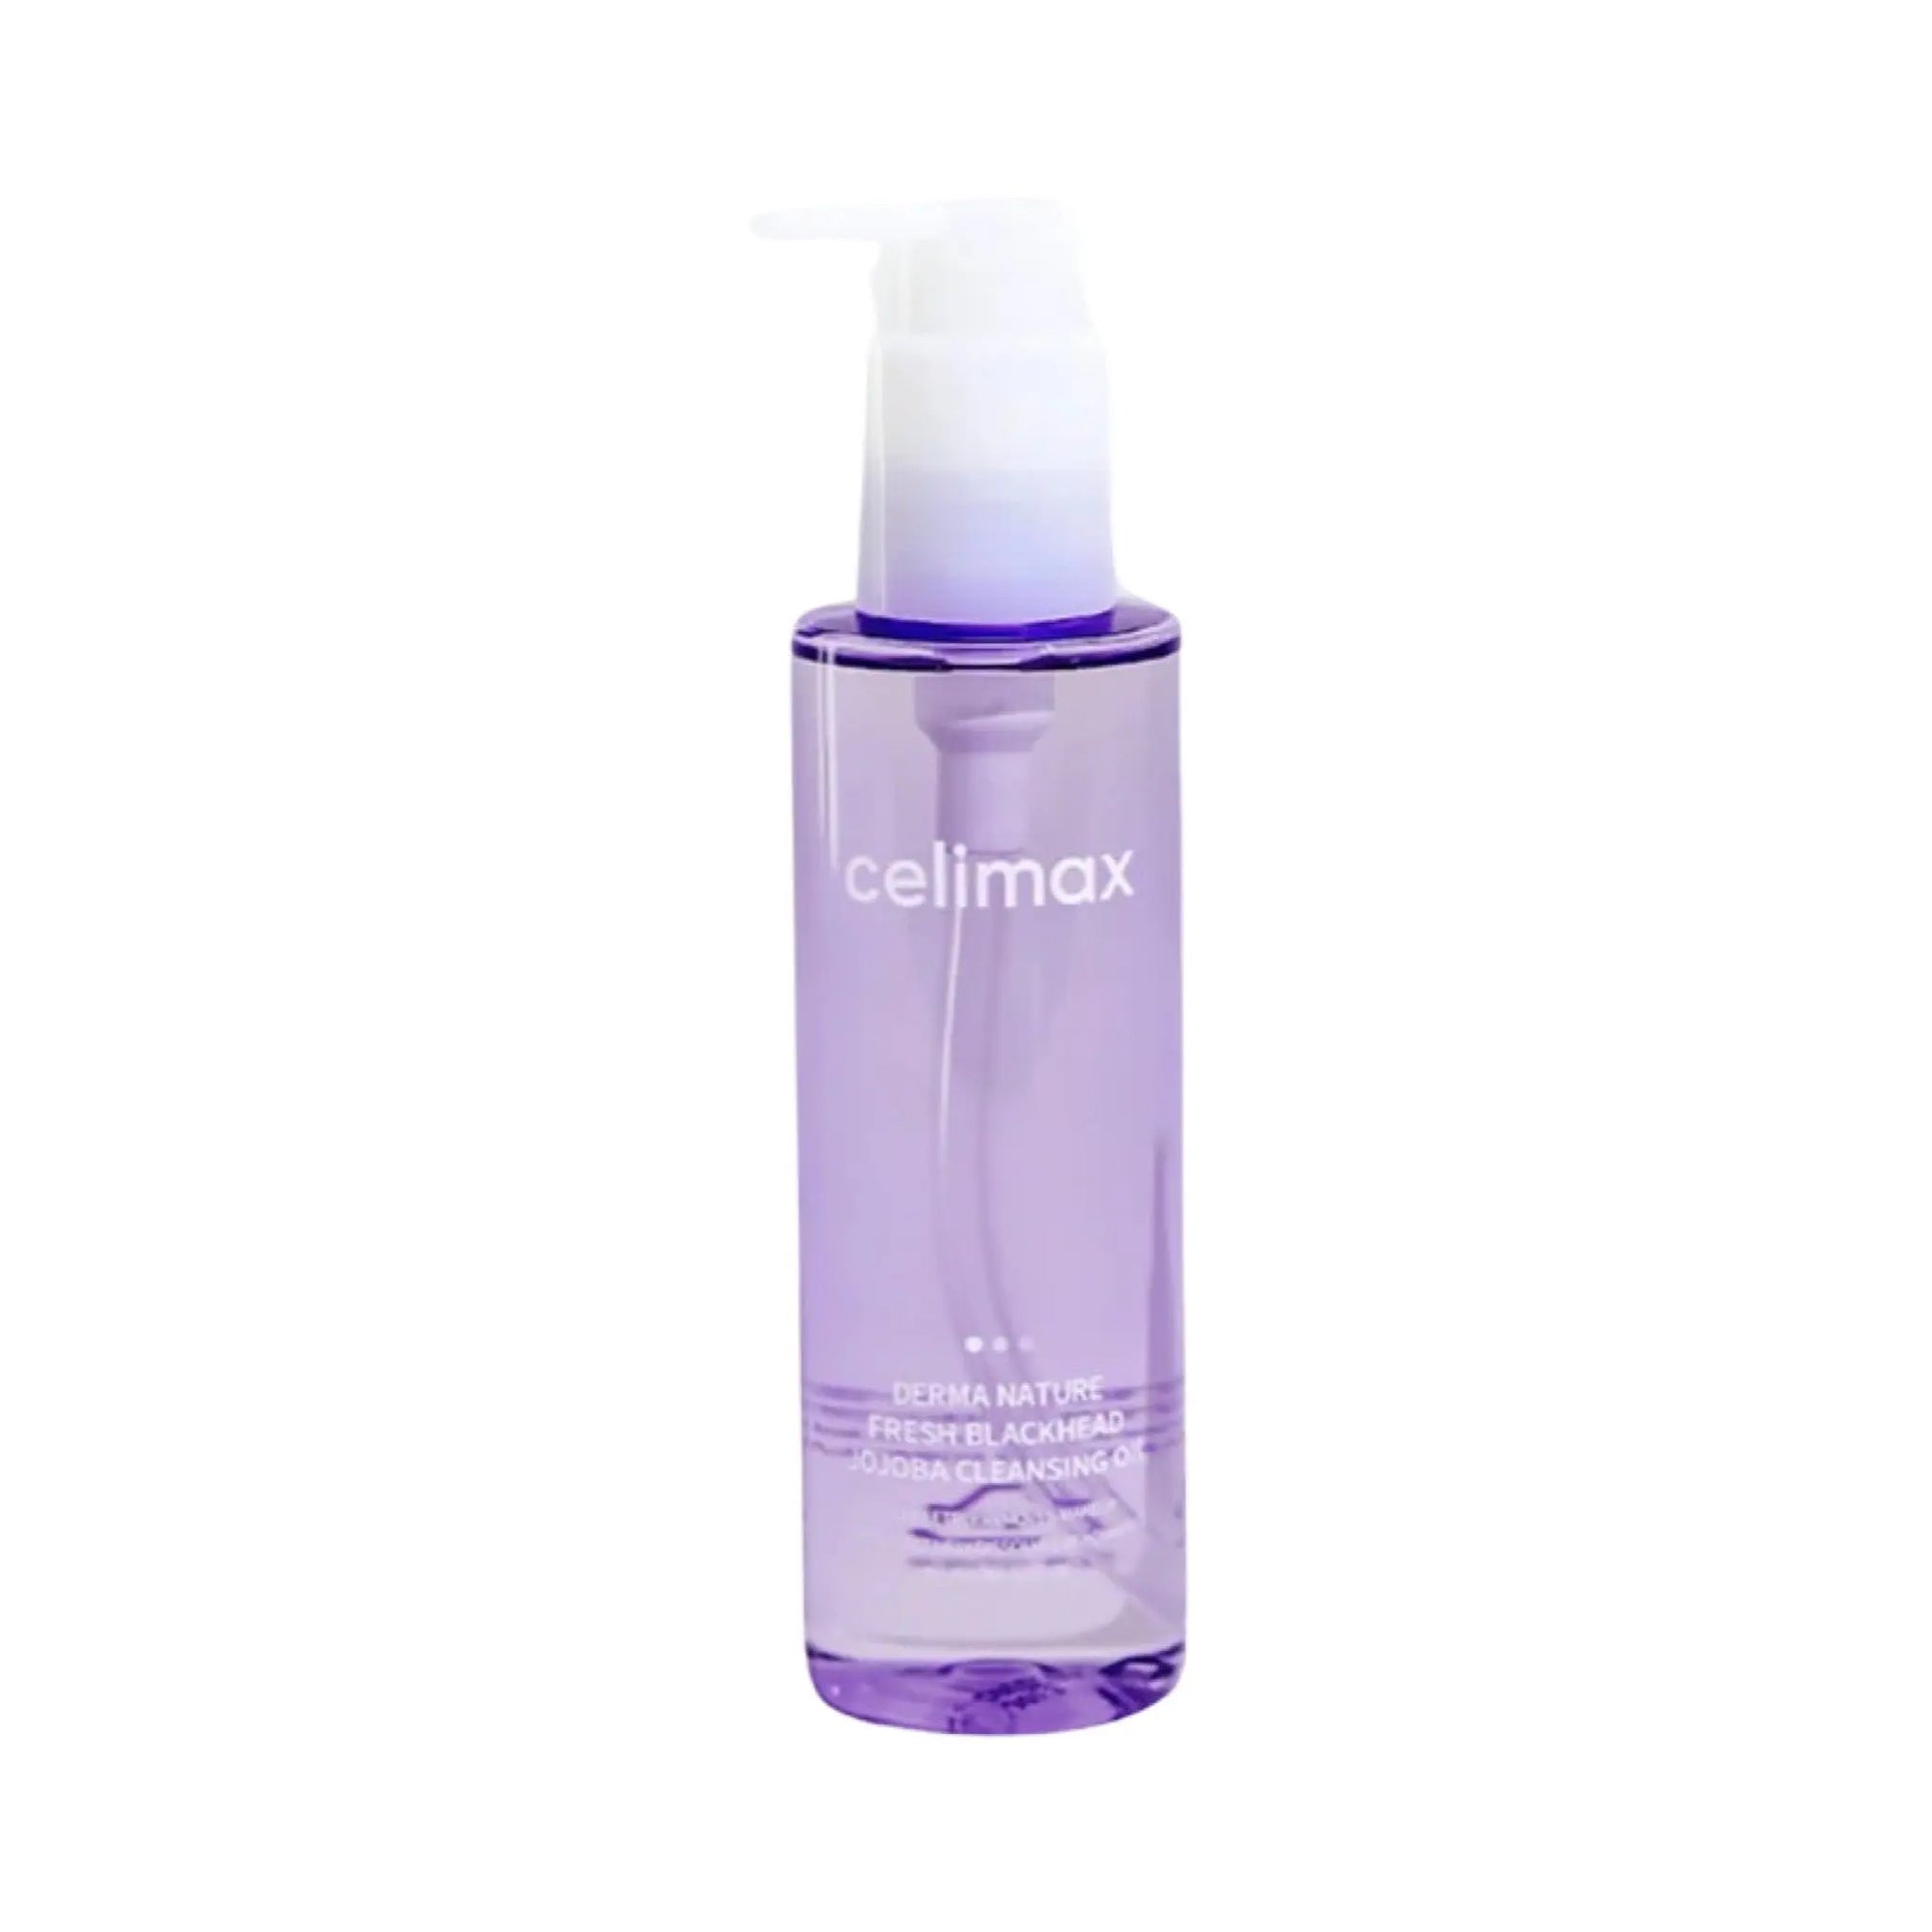 Celimax - Fresh Blackhead Jojoba Cleansing Oil 150mL Celimax